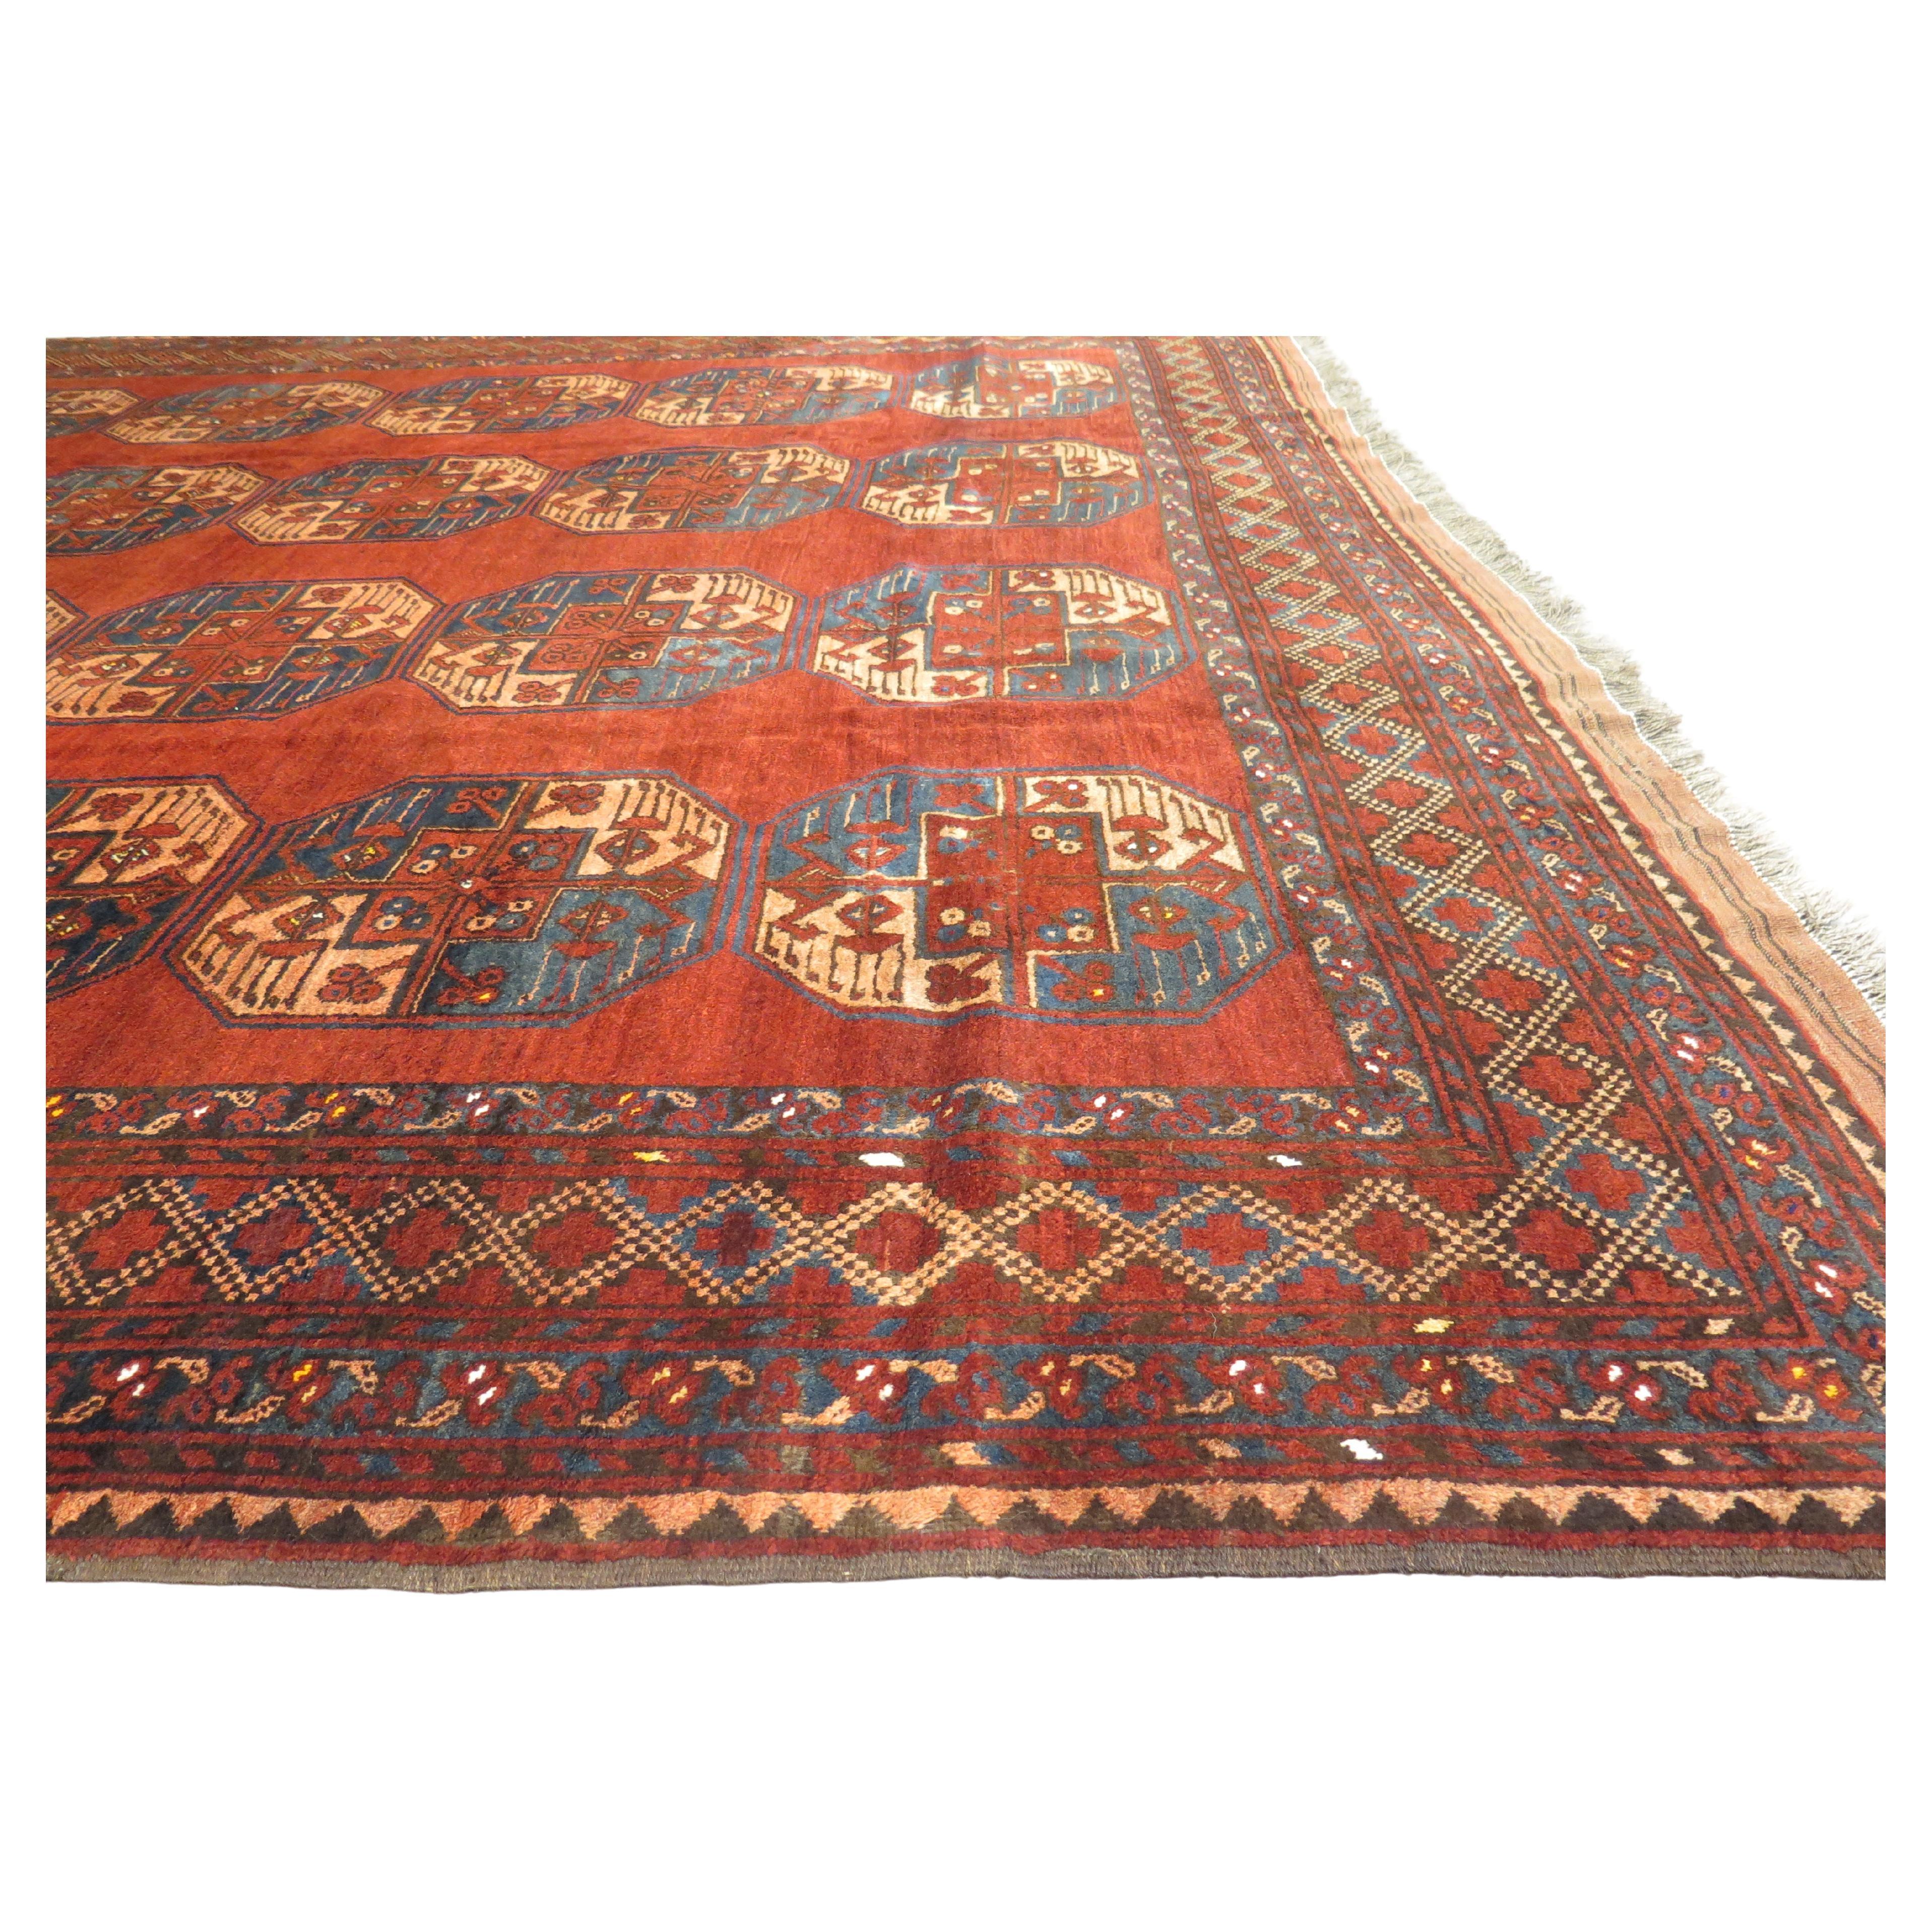 Antique Ersari Carpet, c. 1900